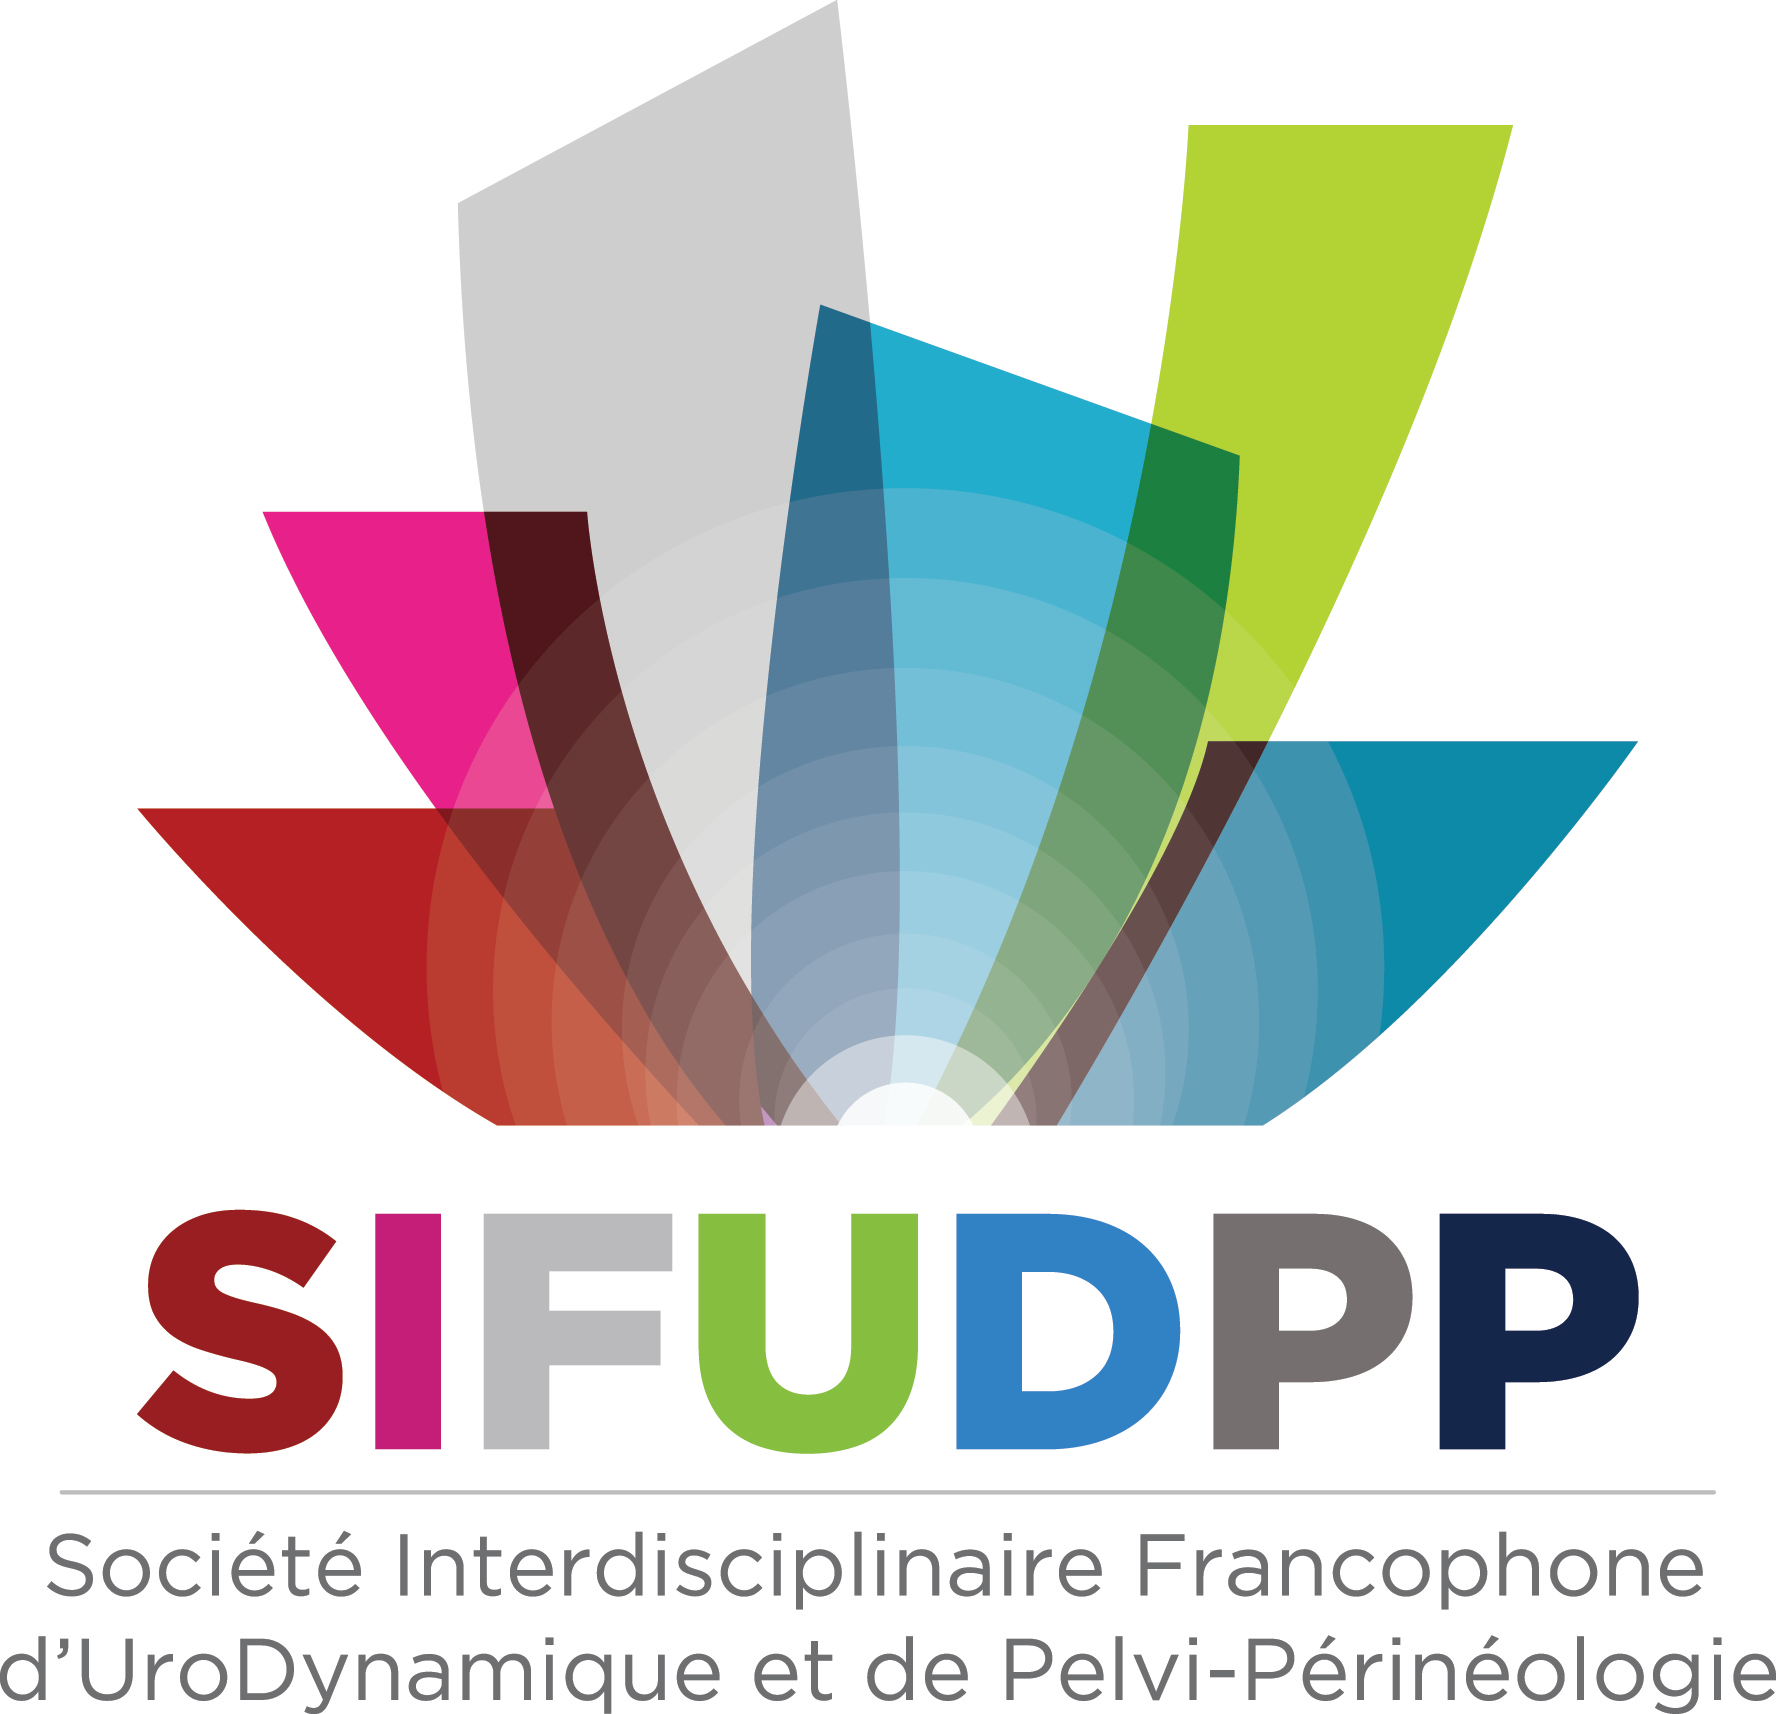 SIFUD-PP La Baule 2015 : Seven Up - Les 7 meilleures communications libres